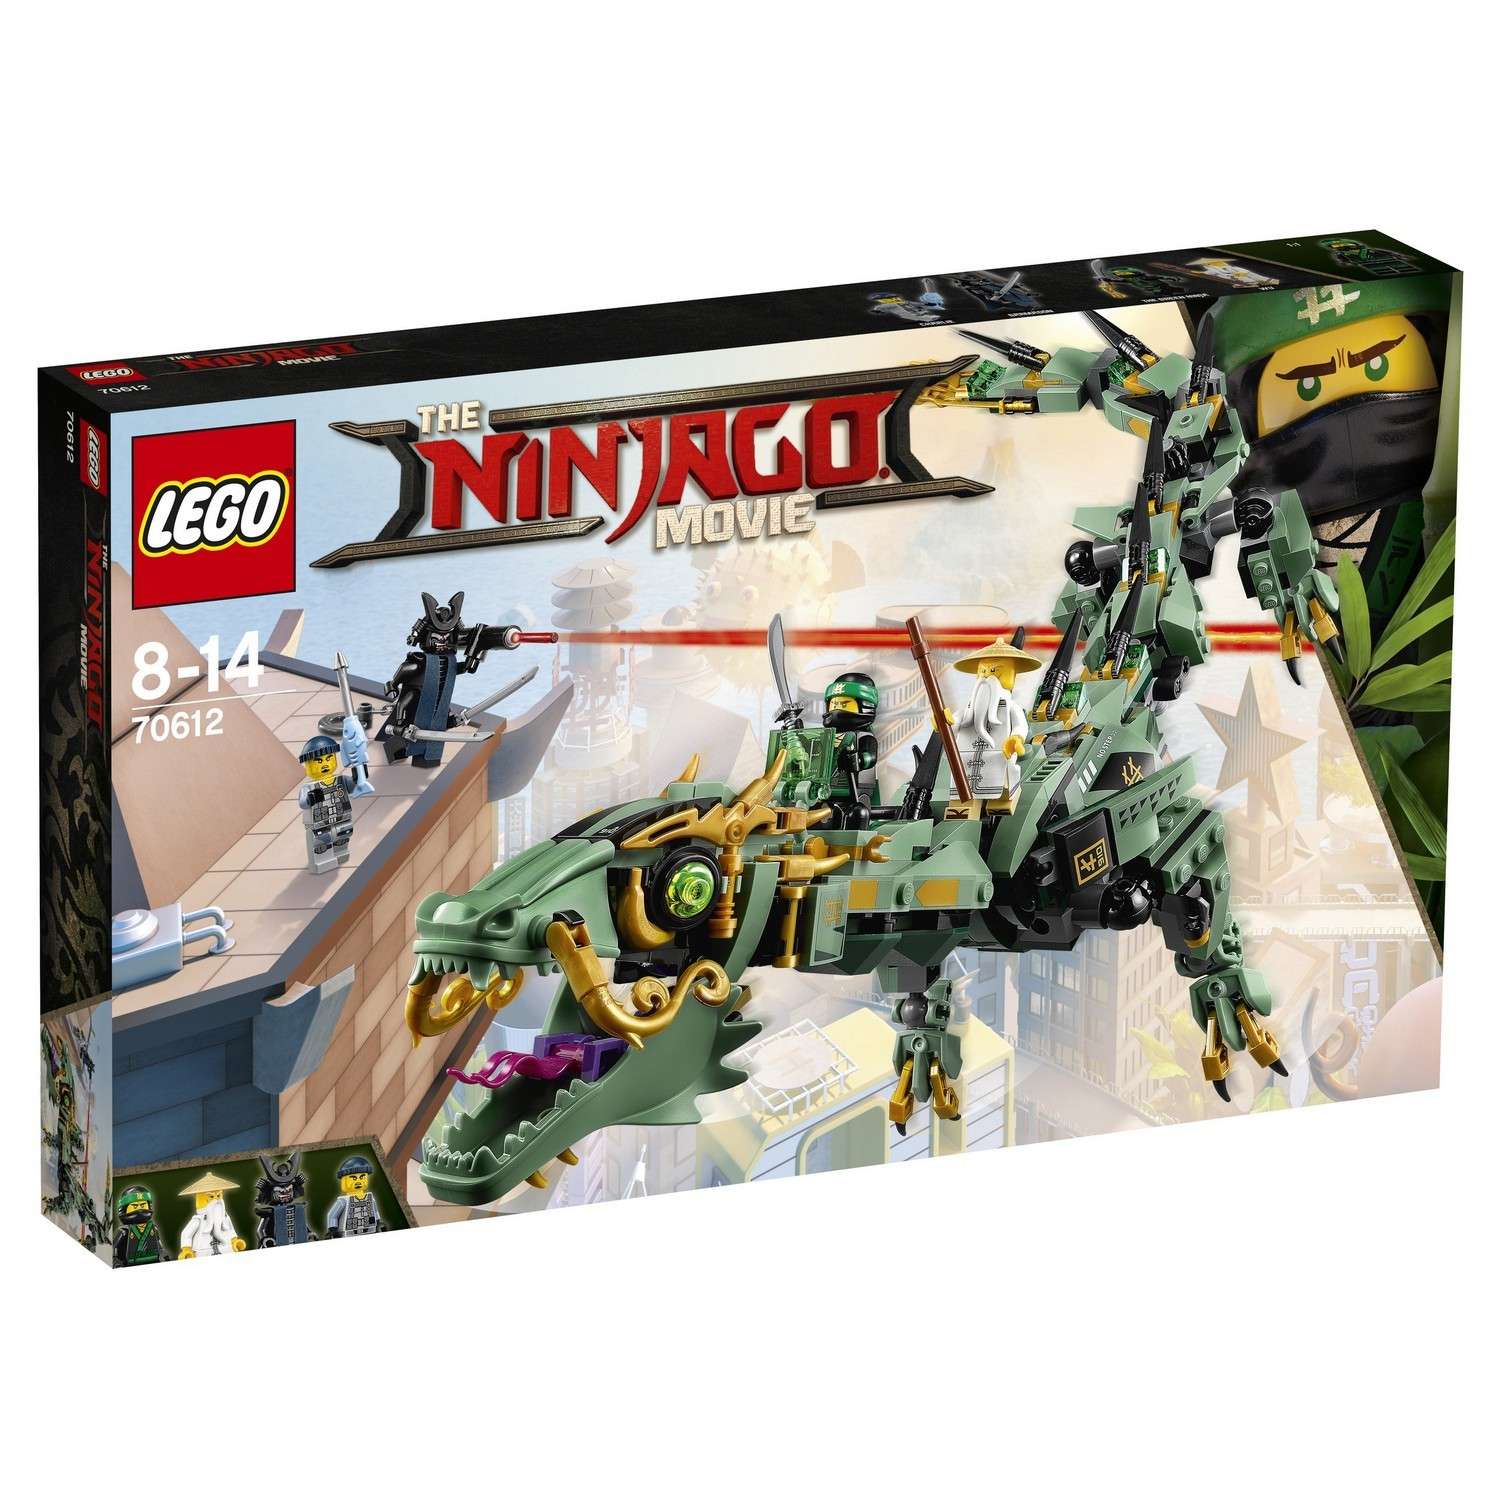 Истории Монастыря Кружитцу - LEGO Ninjago - Все серии